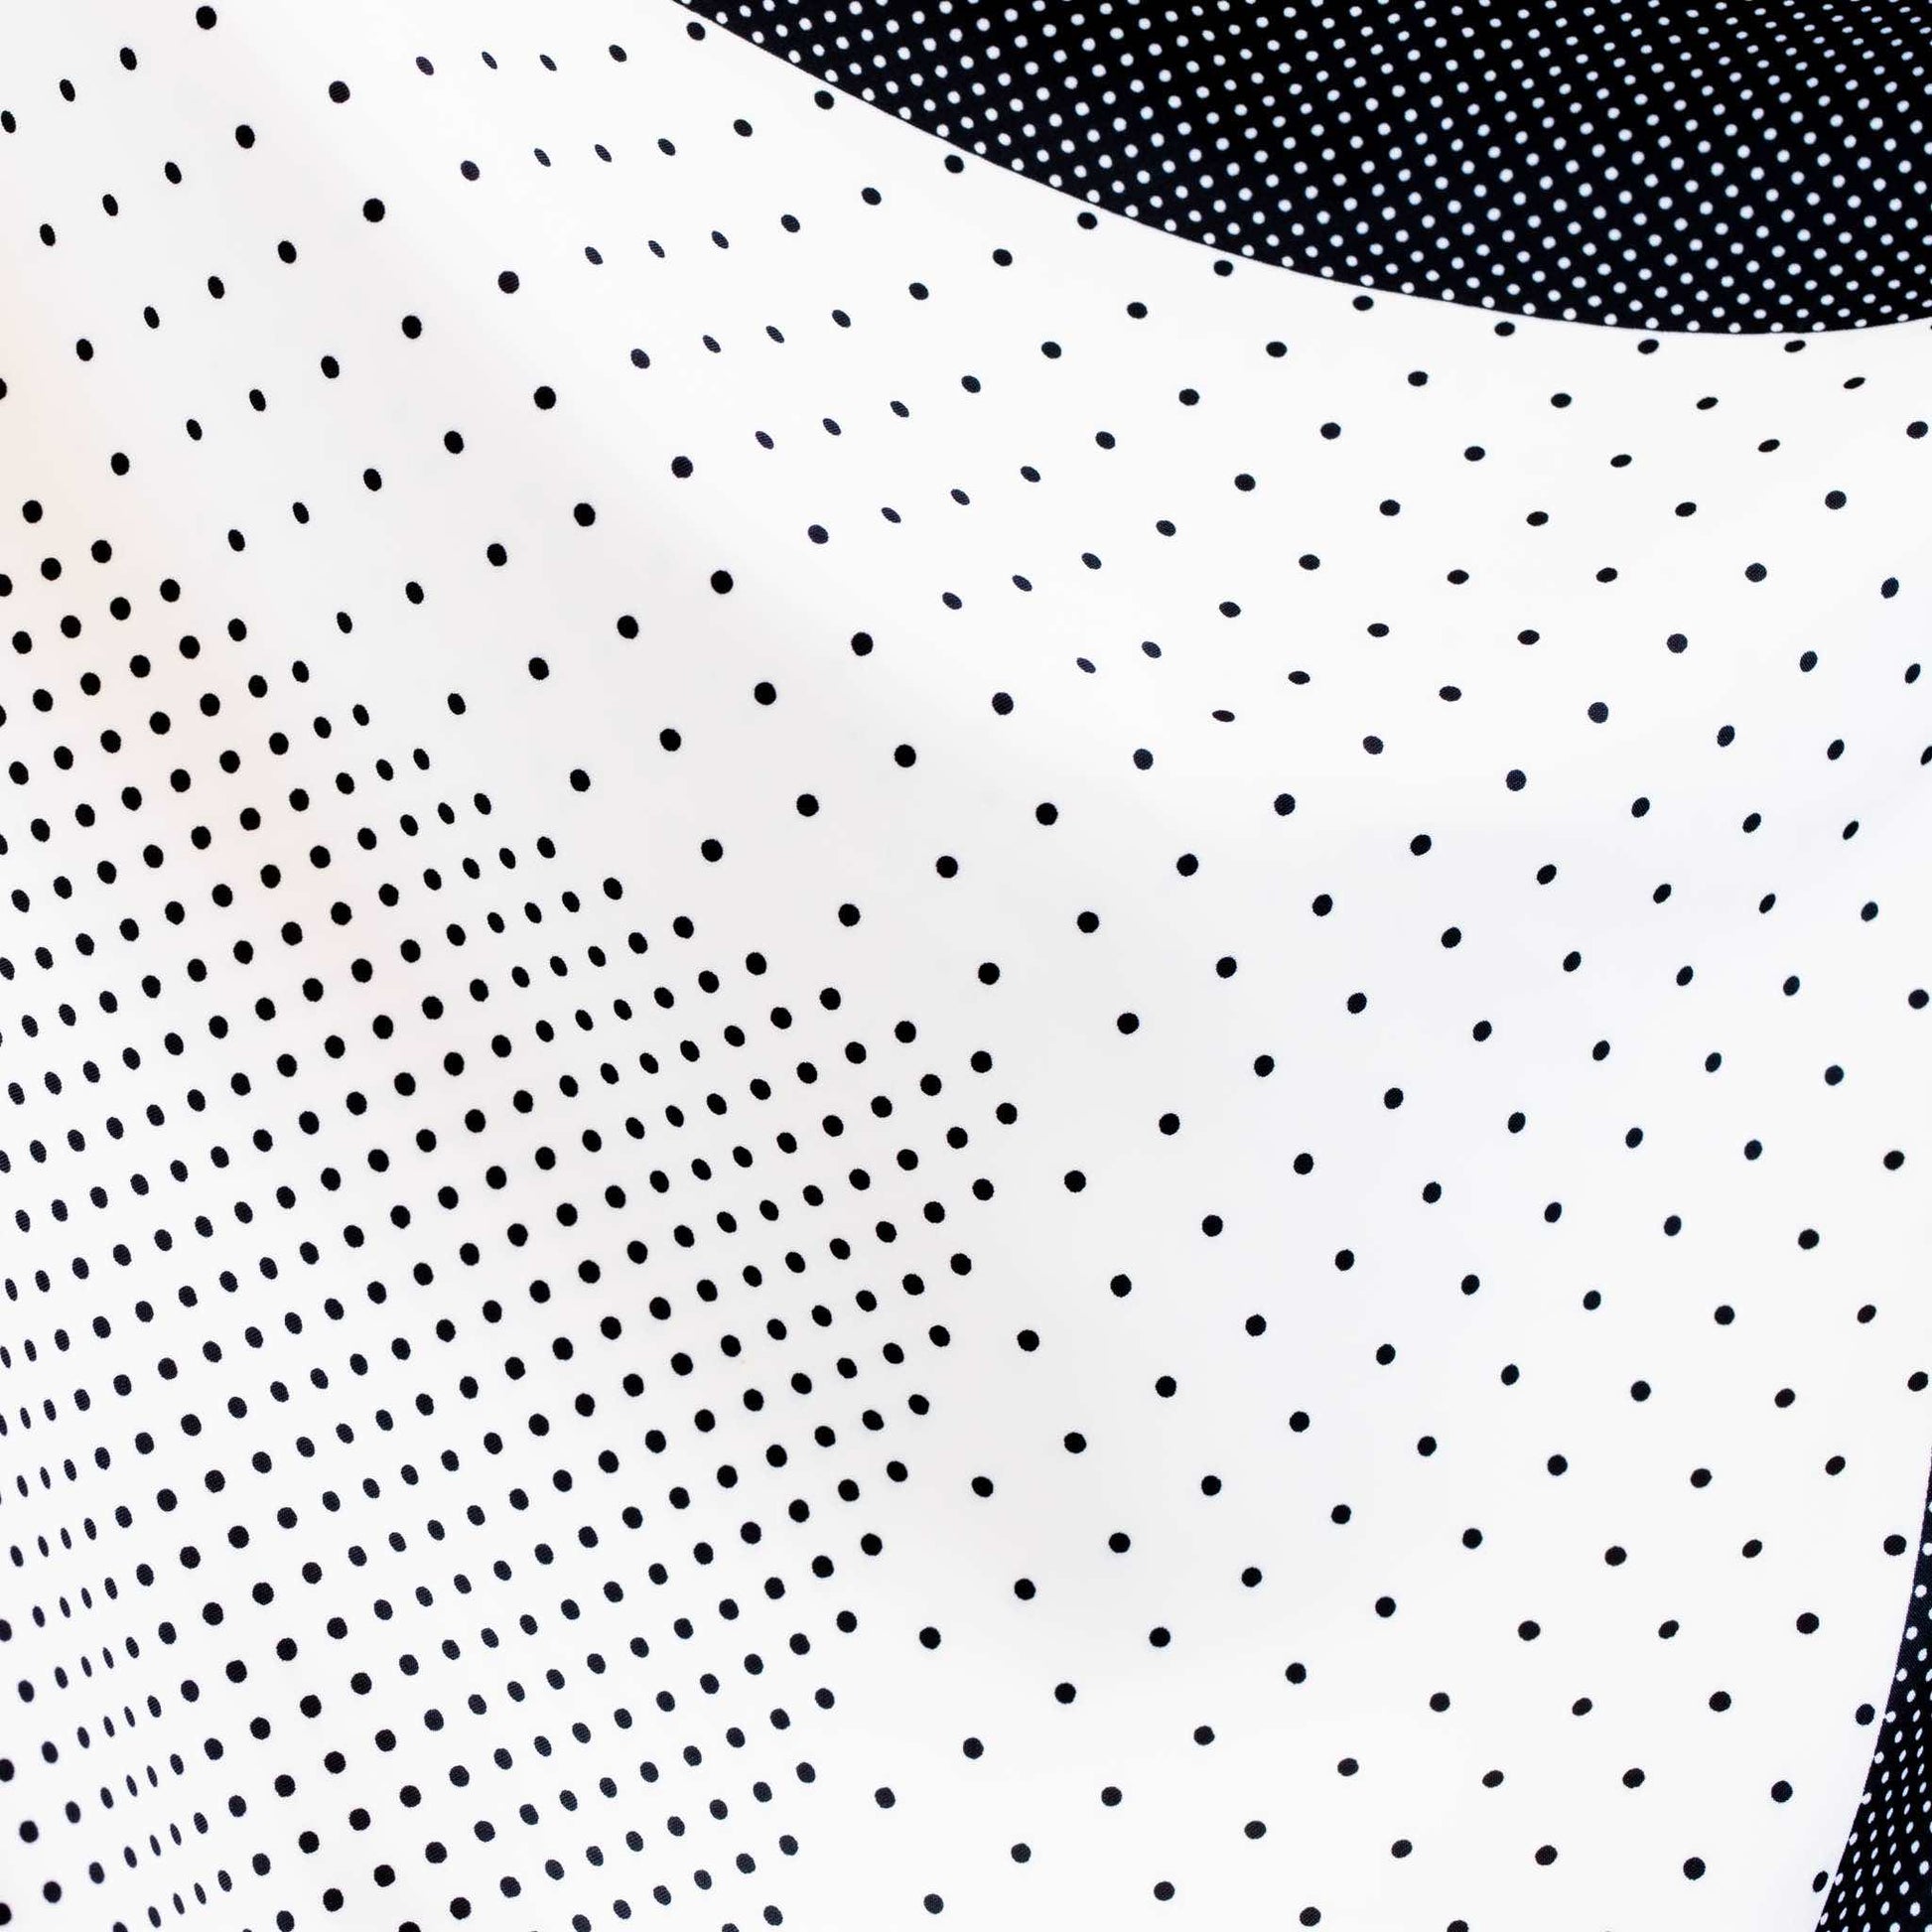 Eșarfă damă din satin, imprimeu cu secțiuni geometrice și buline mici, 55 x 55 cm - Alb, Negru 